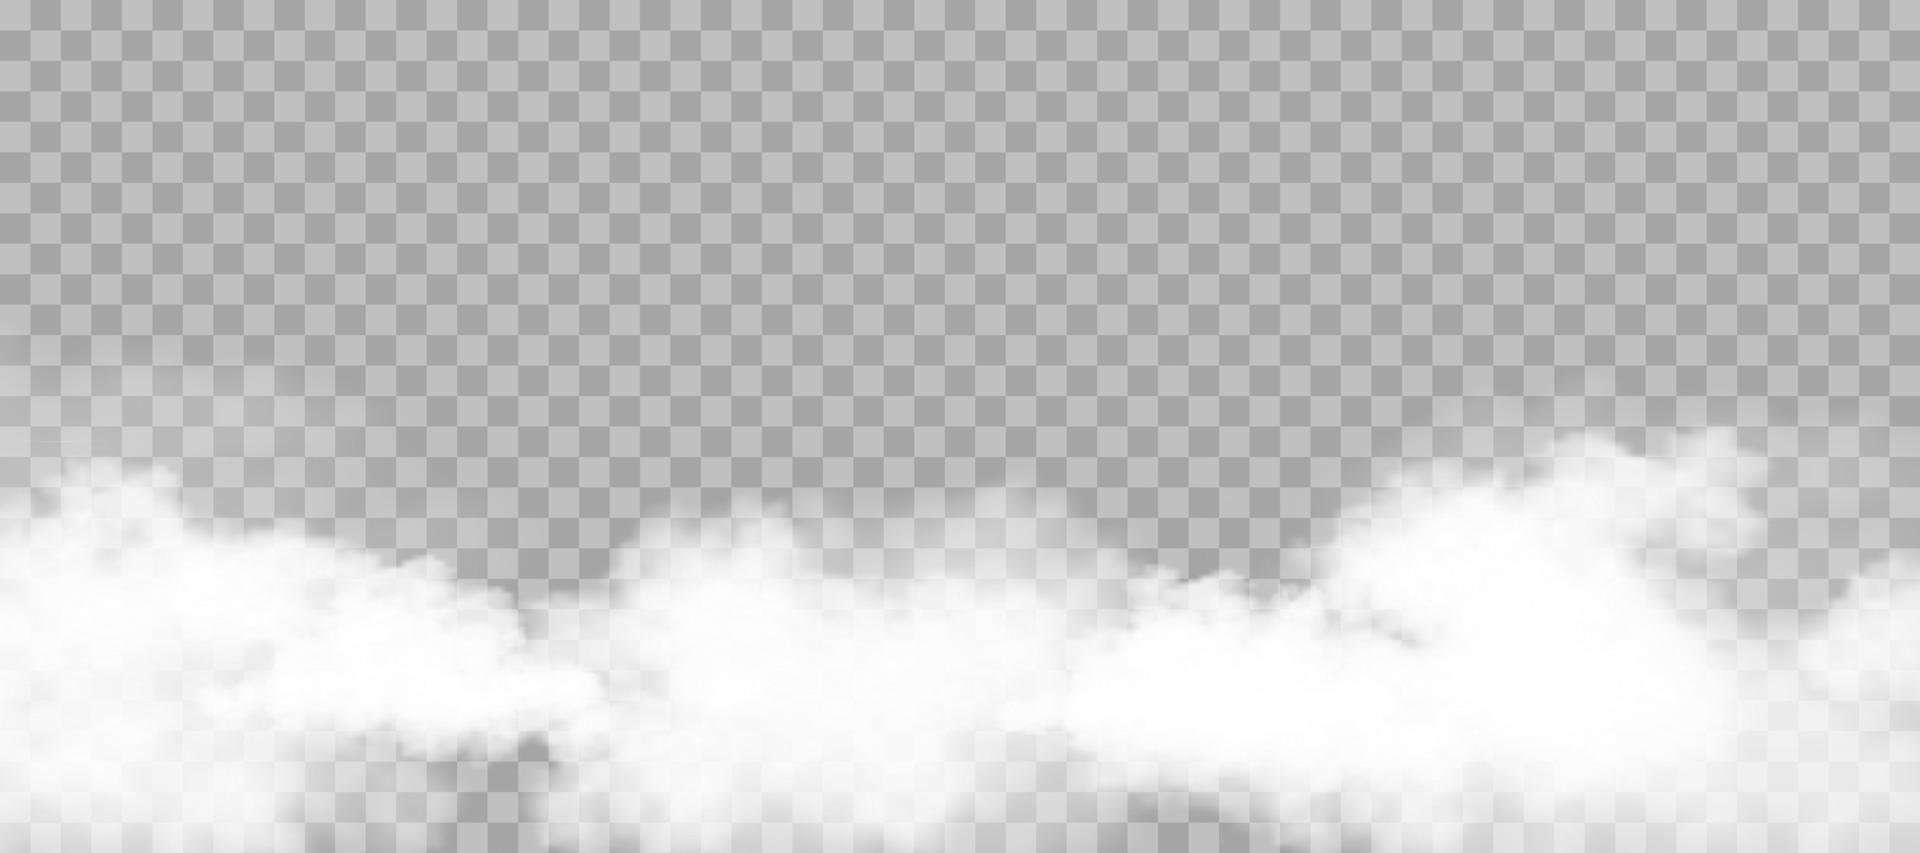 pluizige witte wolk hemel geïsoleerd op transparante achtergrond voor achtergrond sjabloon decoratie of webbanner bekleding, vector illustratie elementen van natuurlijke zachte cloudscape van rook of onweer